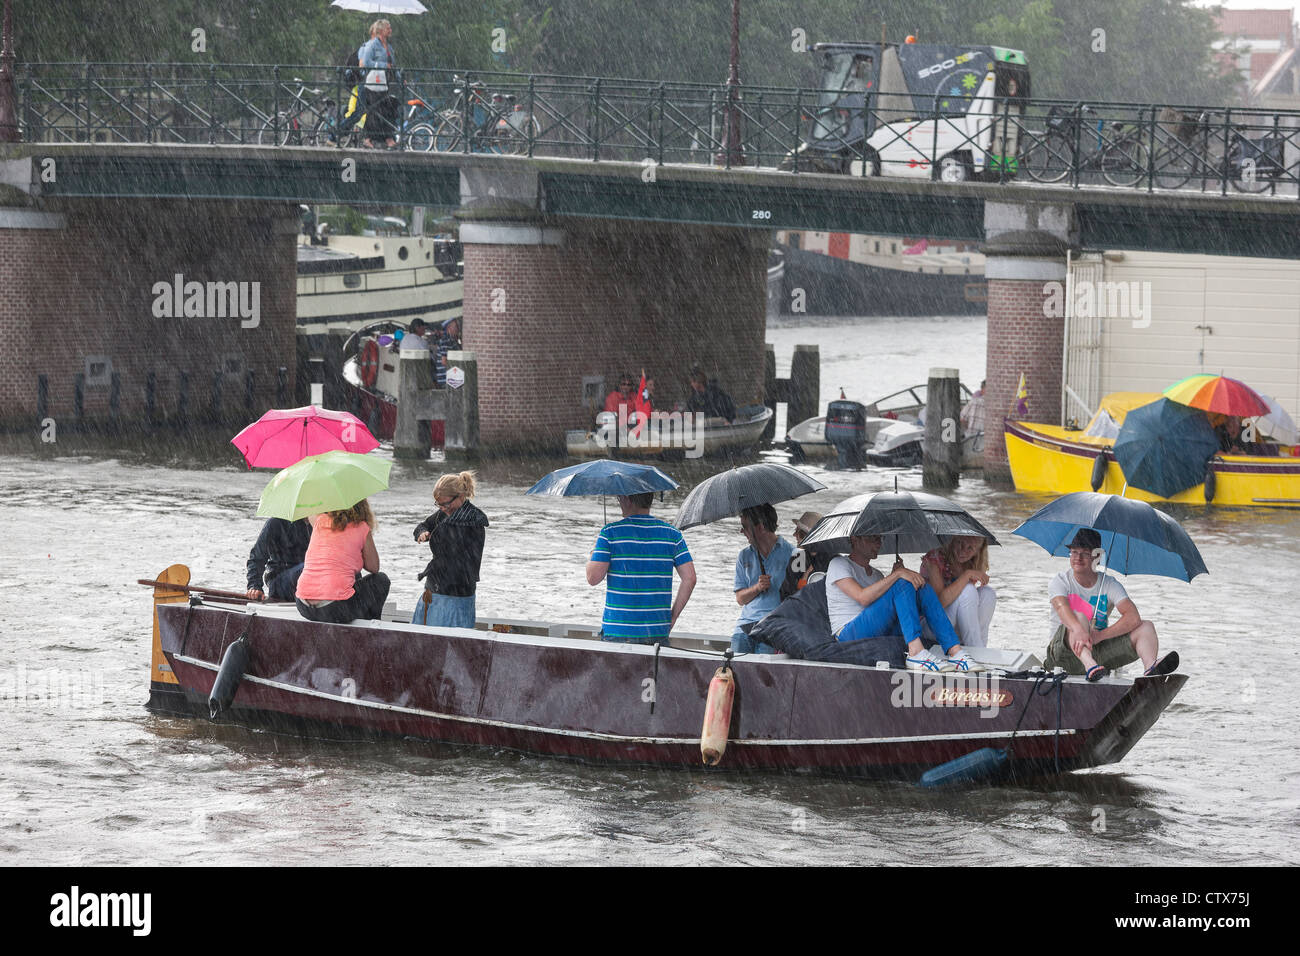 Torrenciales repentinas lluvias de verano en Amsterdam. 9 personas en un pequeño bote, sloop, con sombrillas. Foto de stock